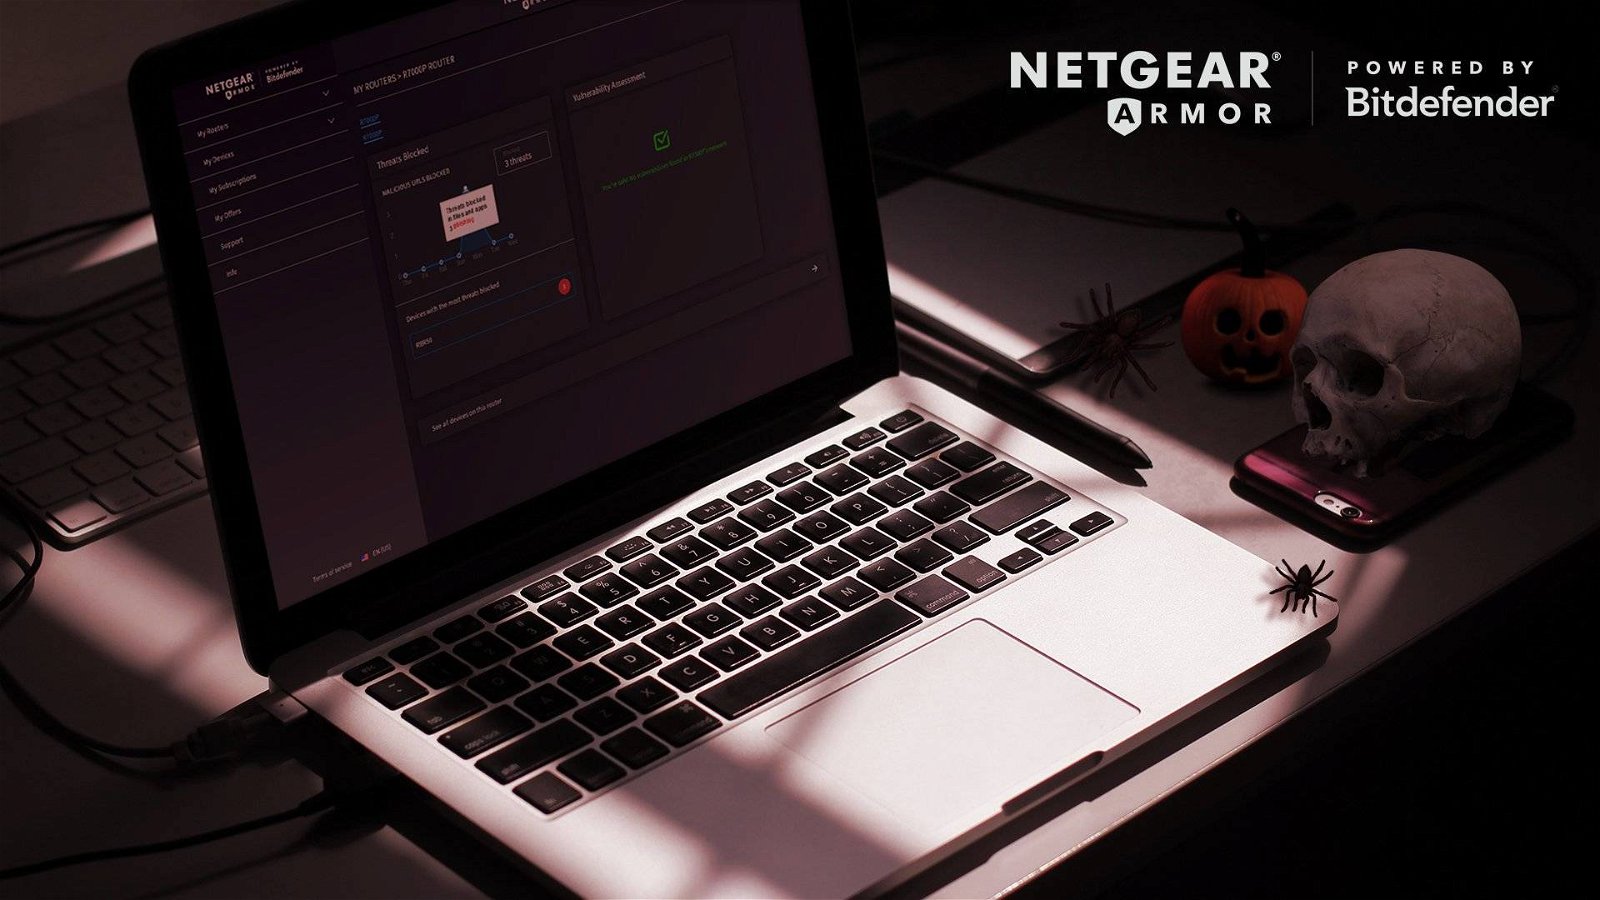 Immagine di NETGEAR presenta Nighthawk Cybersecurity, il router con protezione Bitdefender integrata